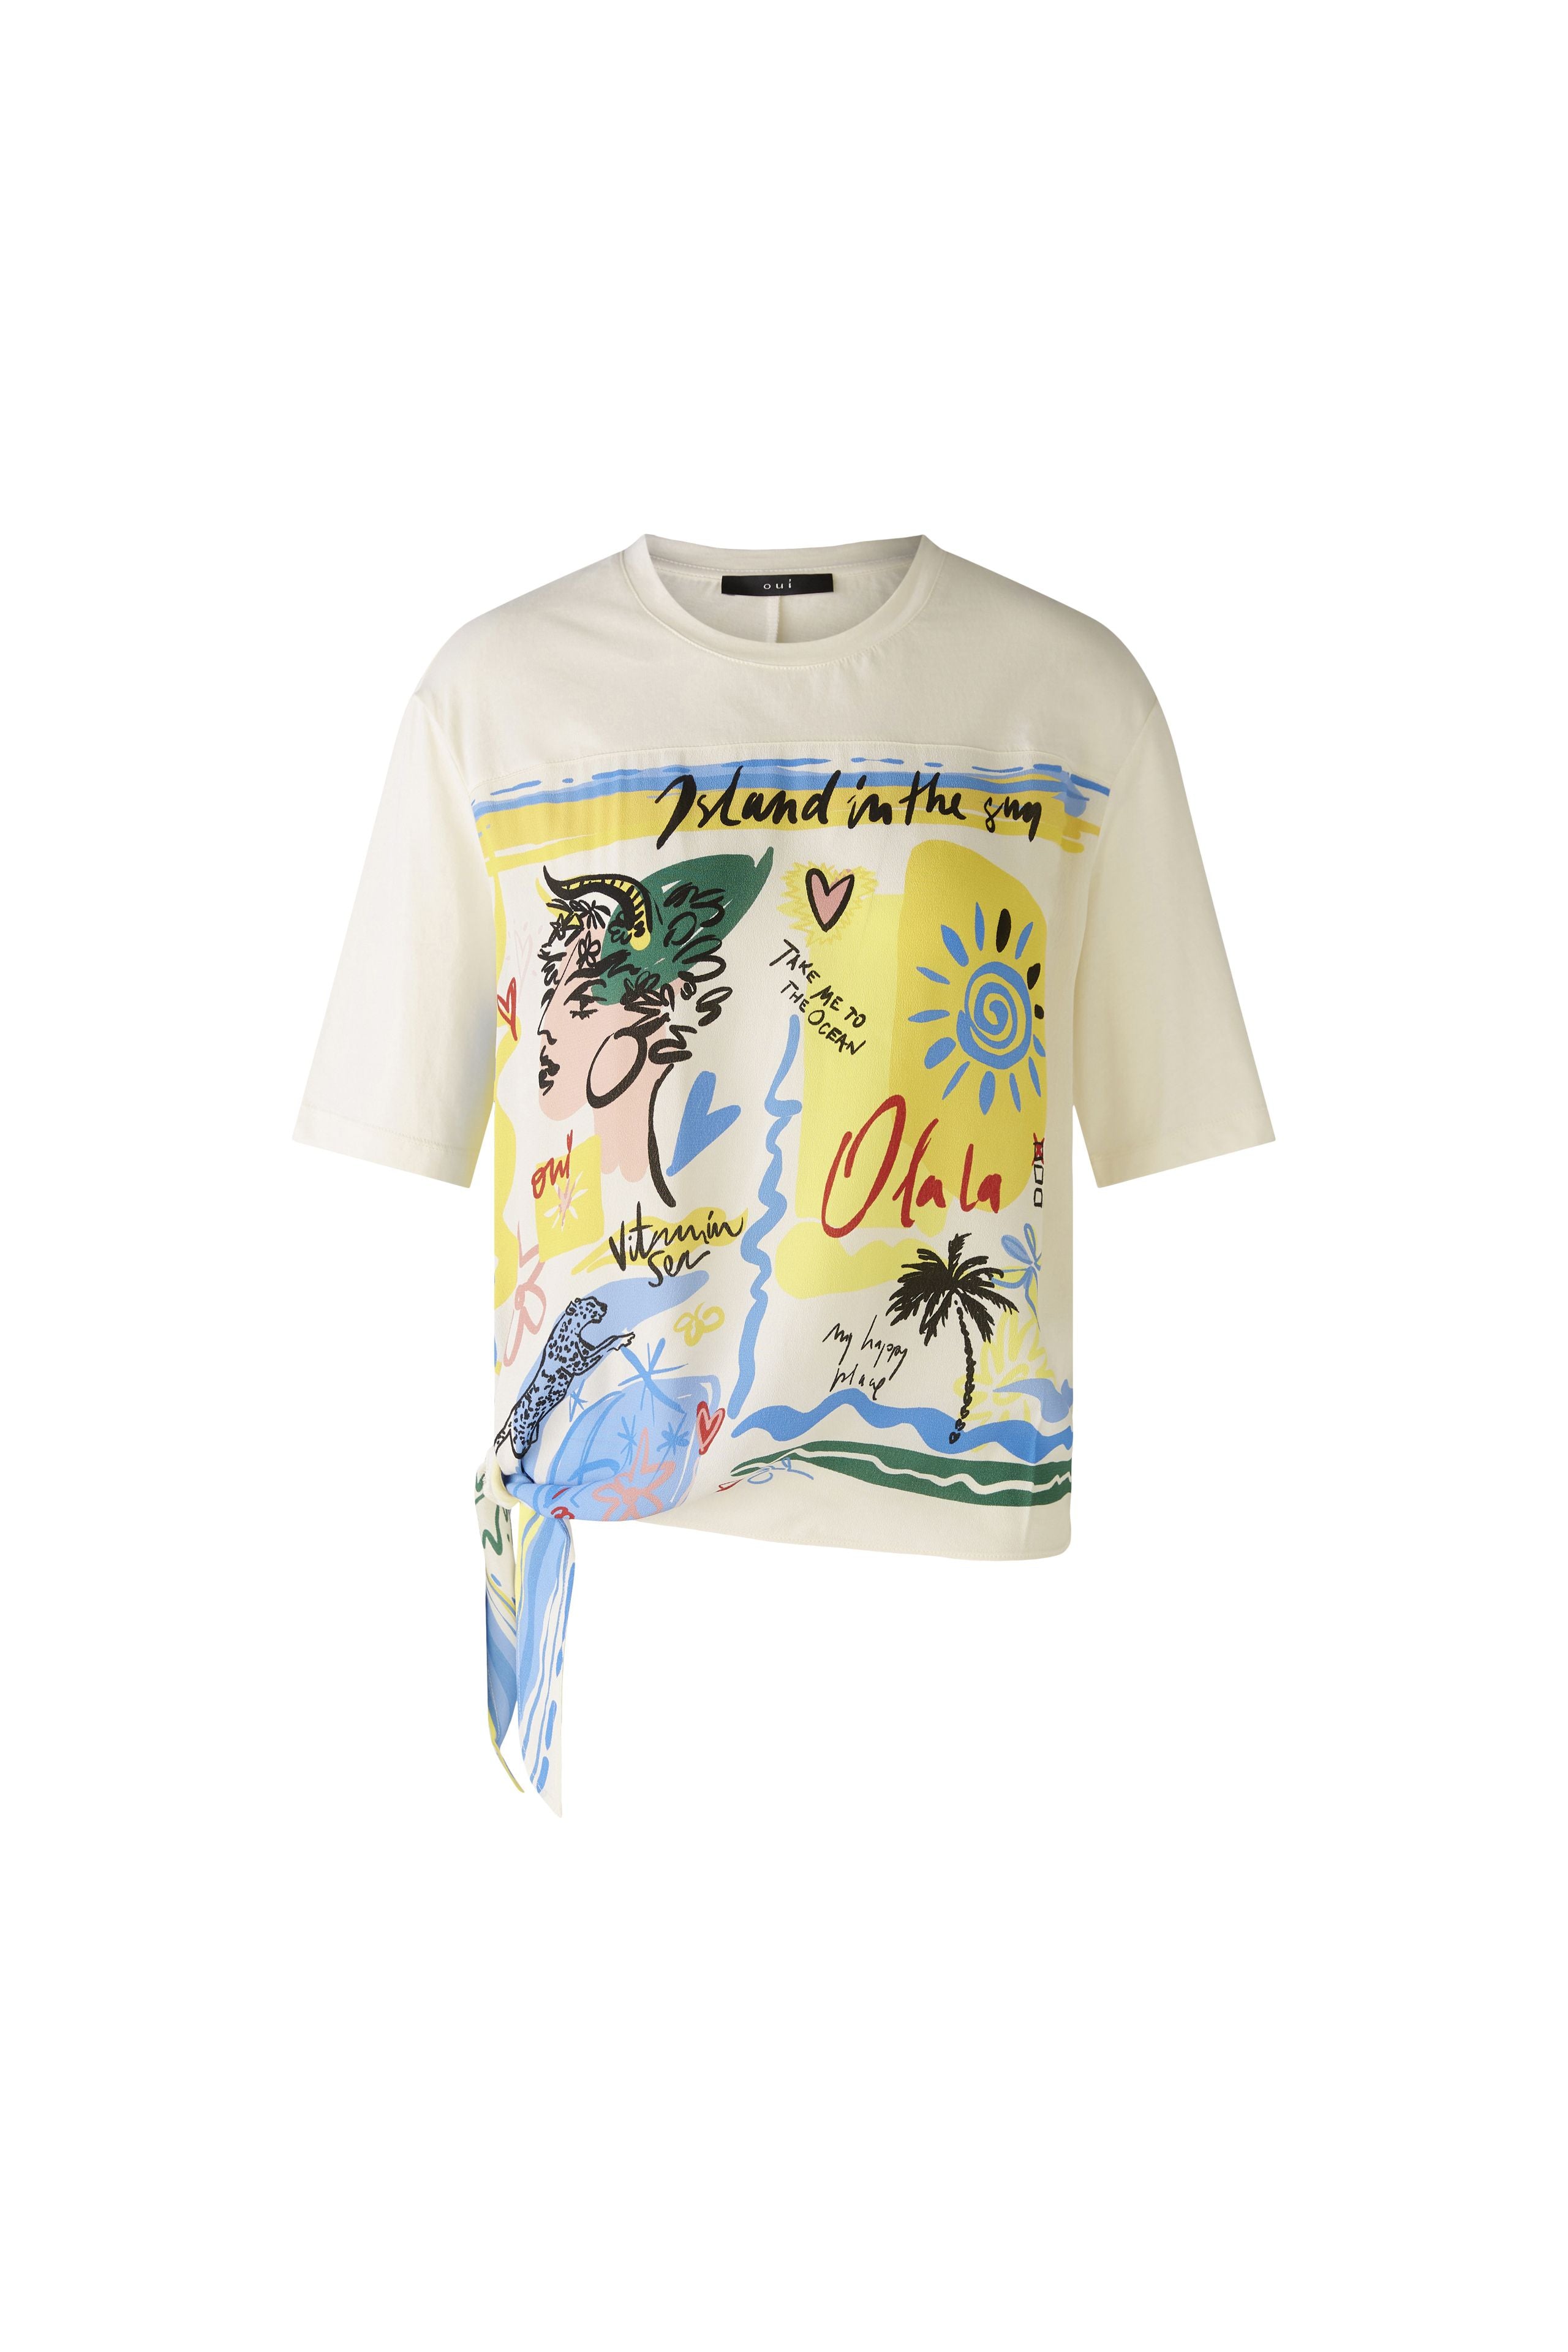 Summer Print T-Shirt in Cloud Dancer